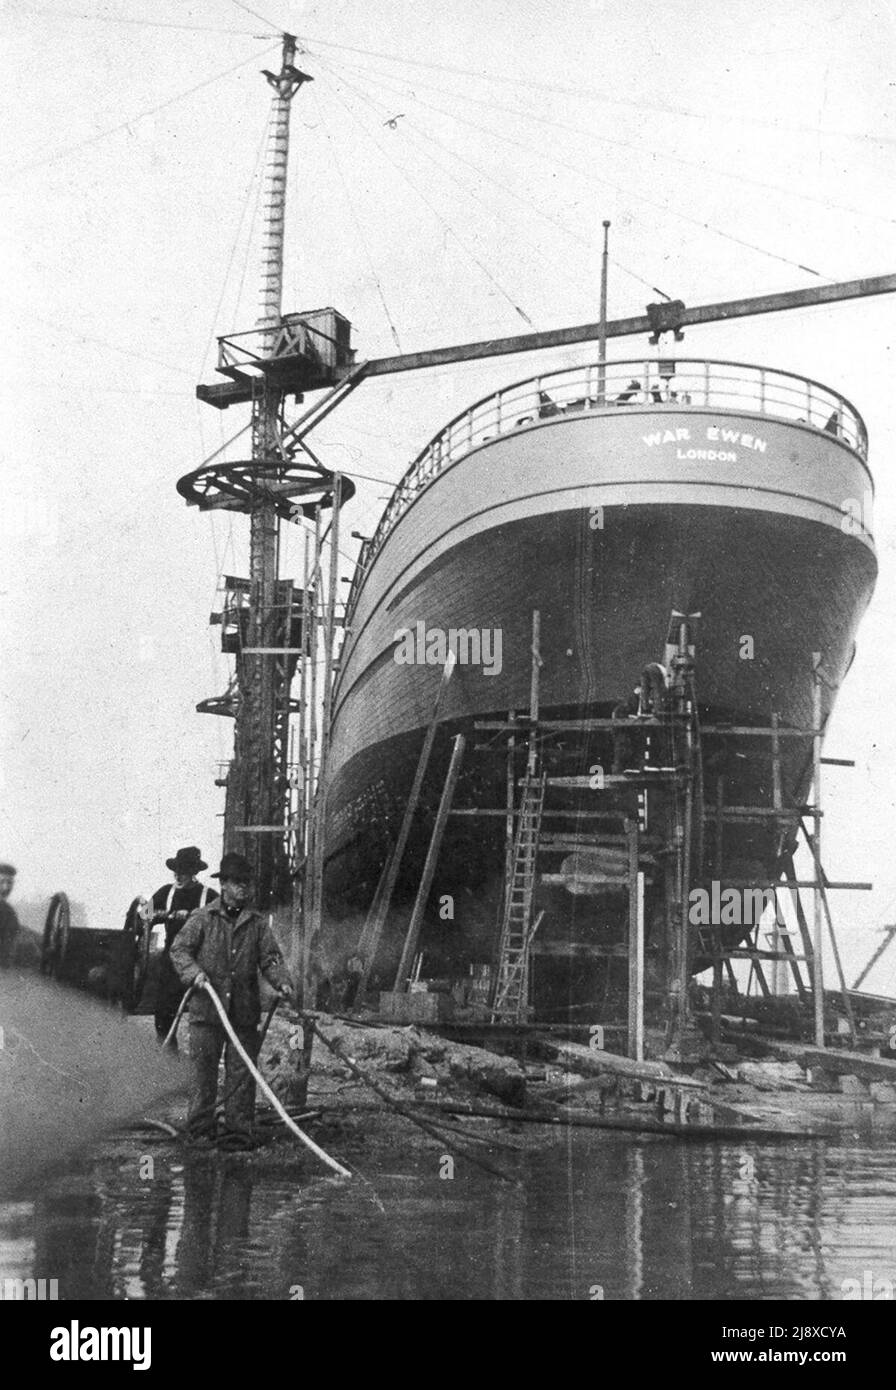 War Ewen baute für den Imperial Munitions Board auf den Poplar Islands Shipyards; startete 1918. Registriert in London. Dies war eines von 4 Schiffen zu je 2800 Tonnen, die auf Poplar Island Shipyards gebaut wurden. Ca. 1918 Stockfoto